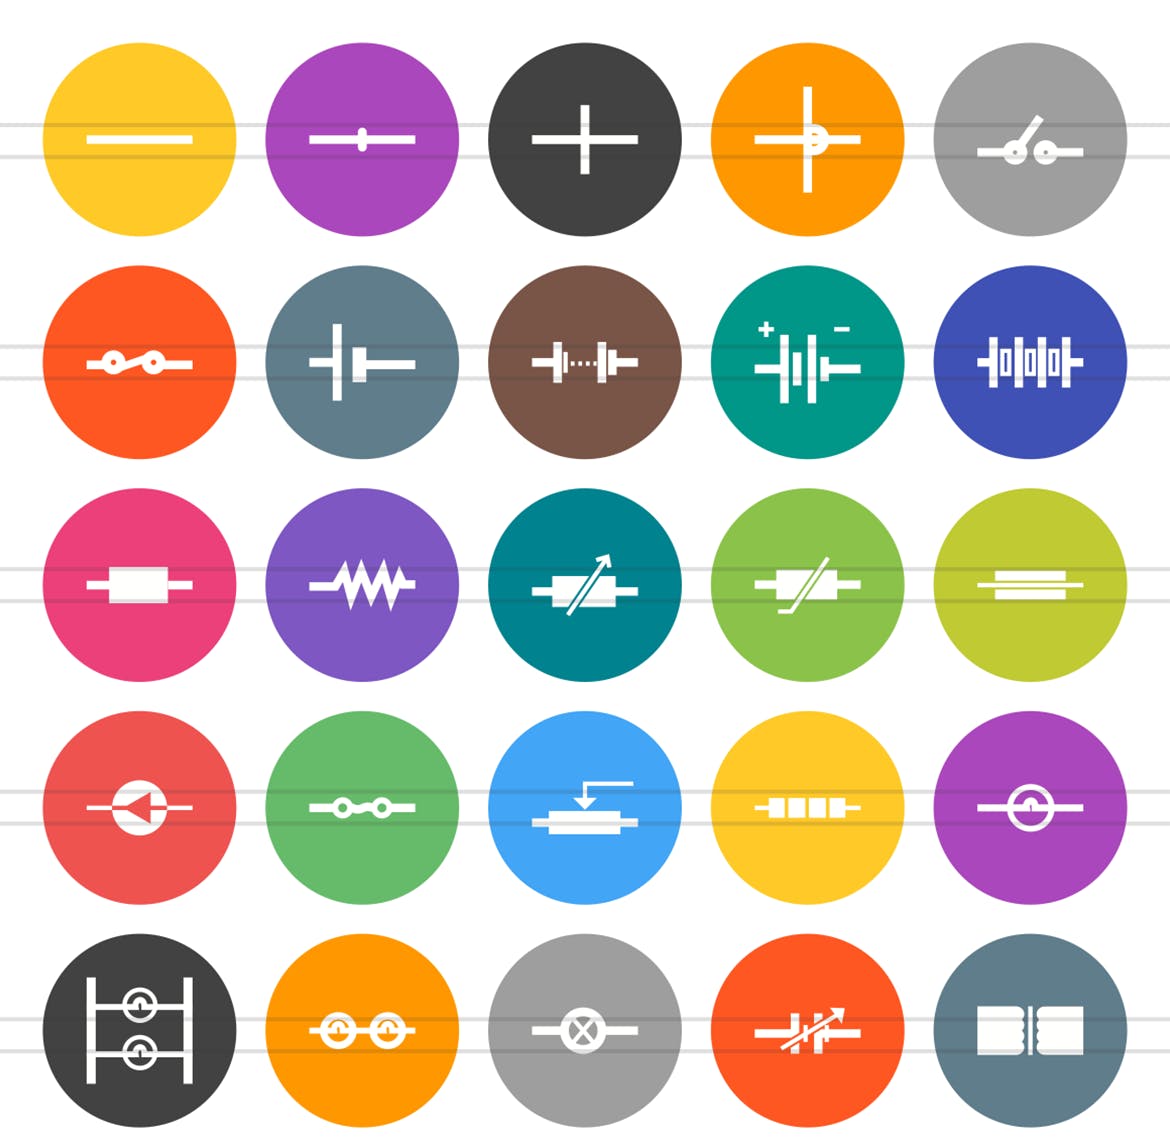 50枚电路线路板主题扁平风圆形素材库精选图标 50 Electric Circuits Flat Round Icons插图(1)